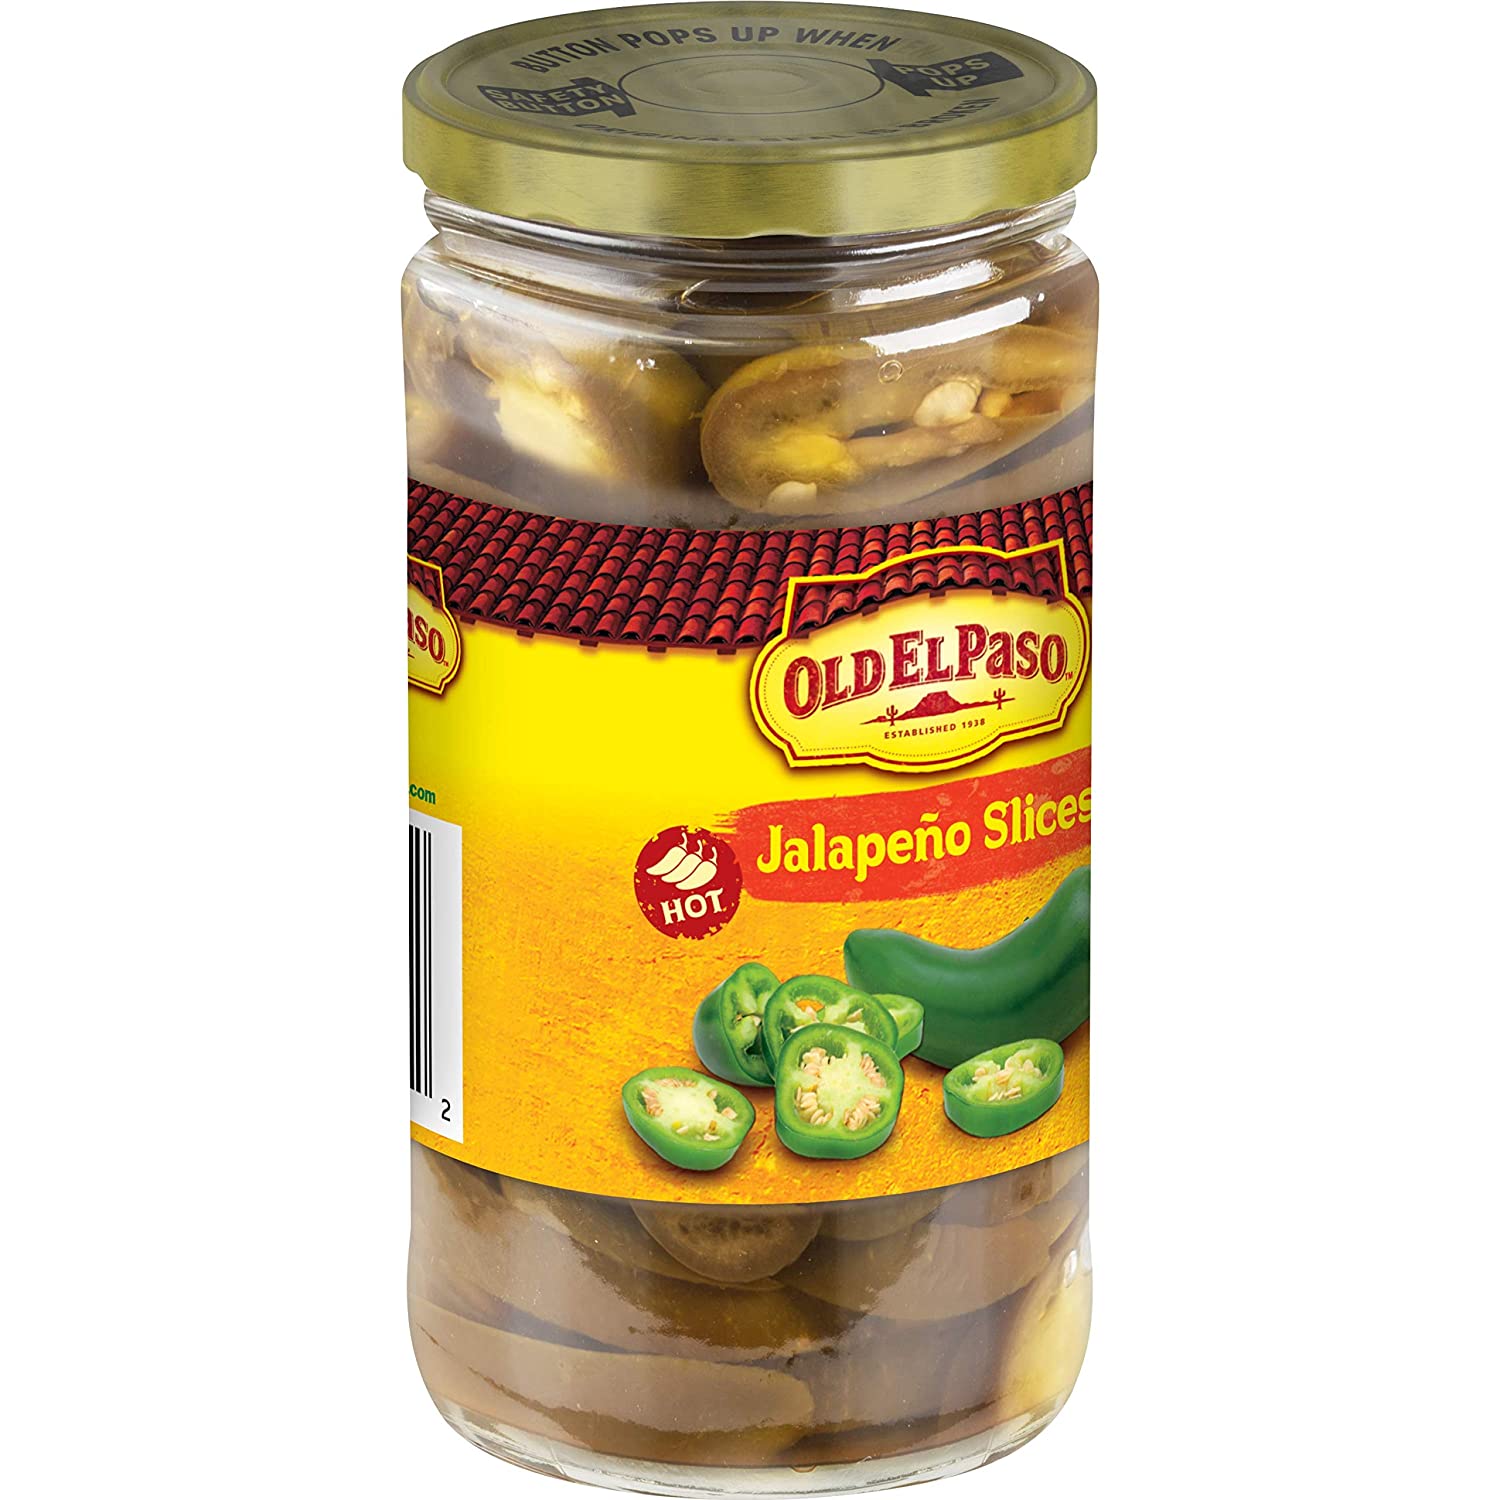 Pickled Jalapenos